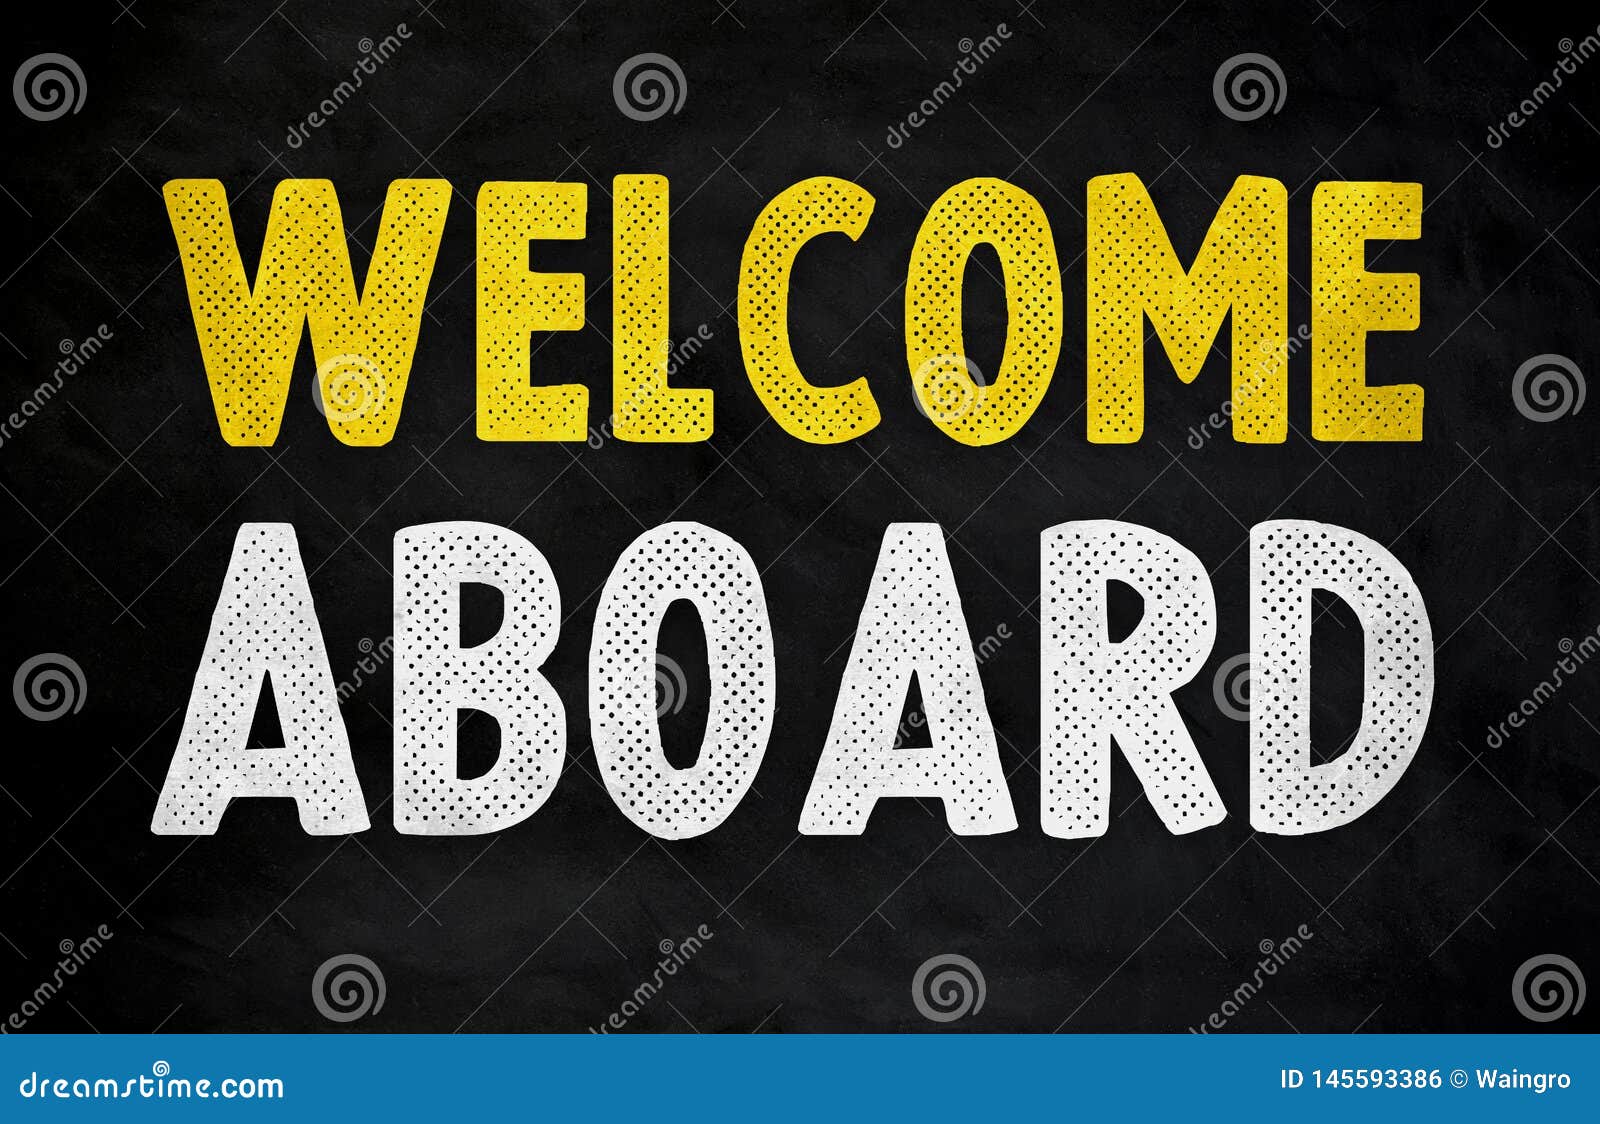 welcome aboard - chalkboard message